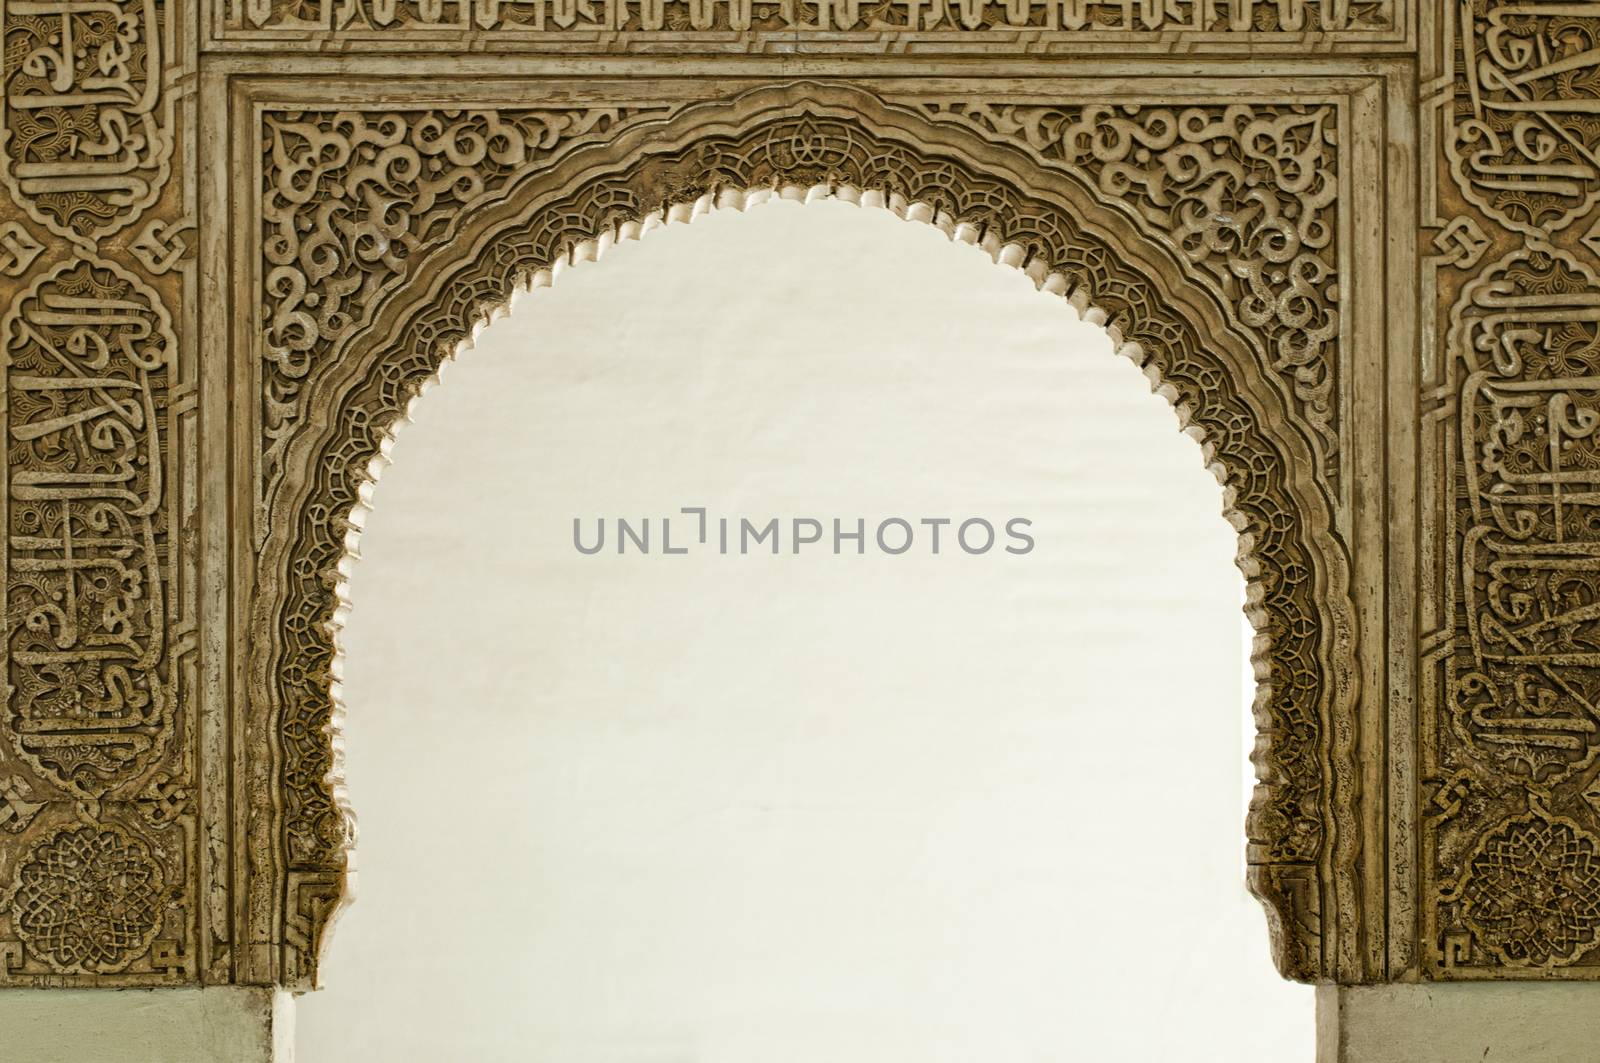 Islamic ornaments on a wall  by deyan_georgiev